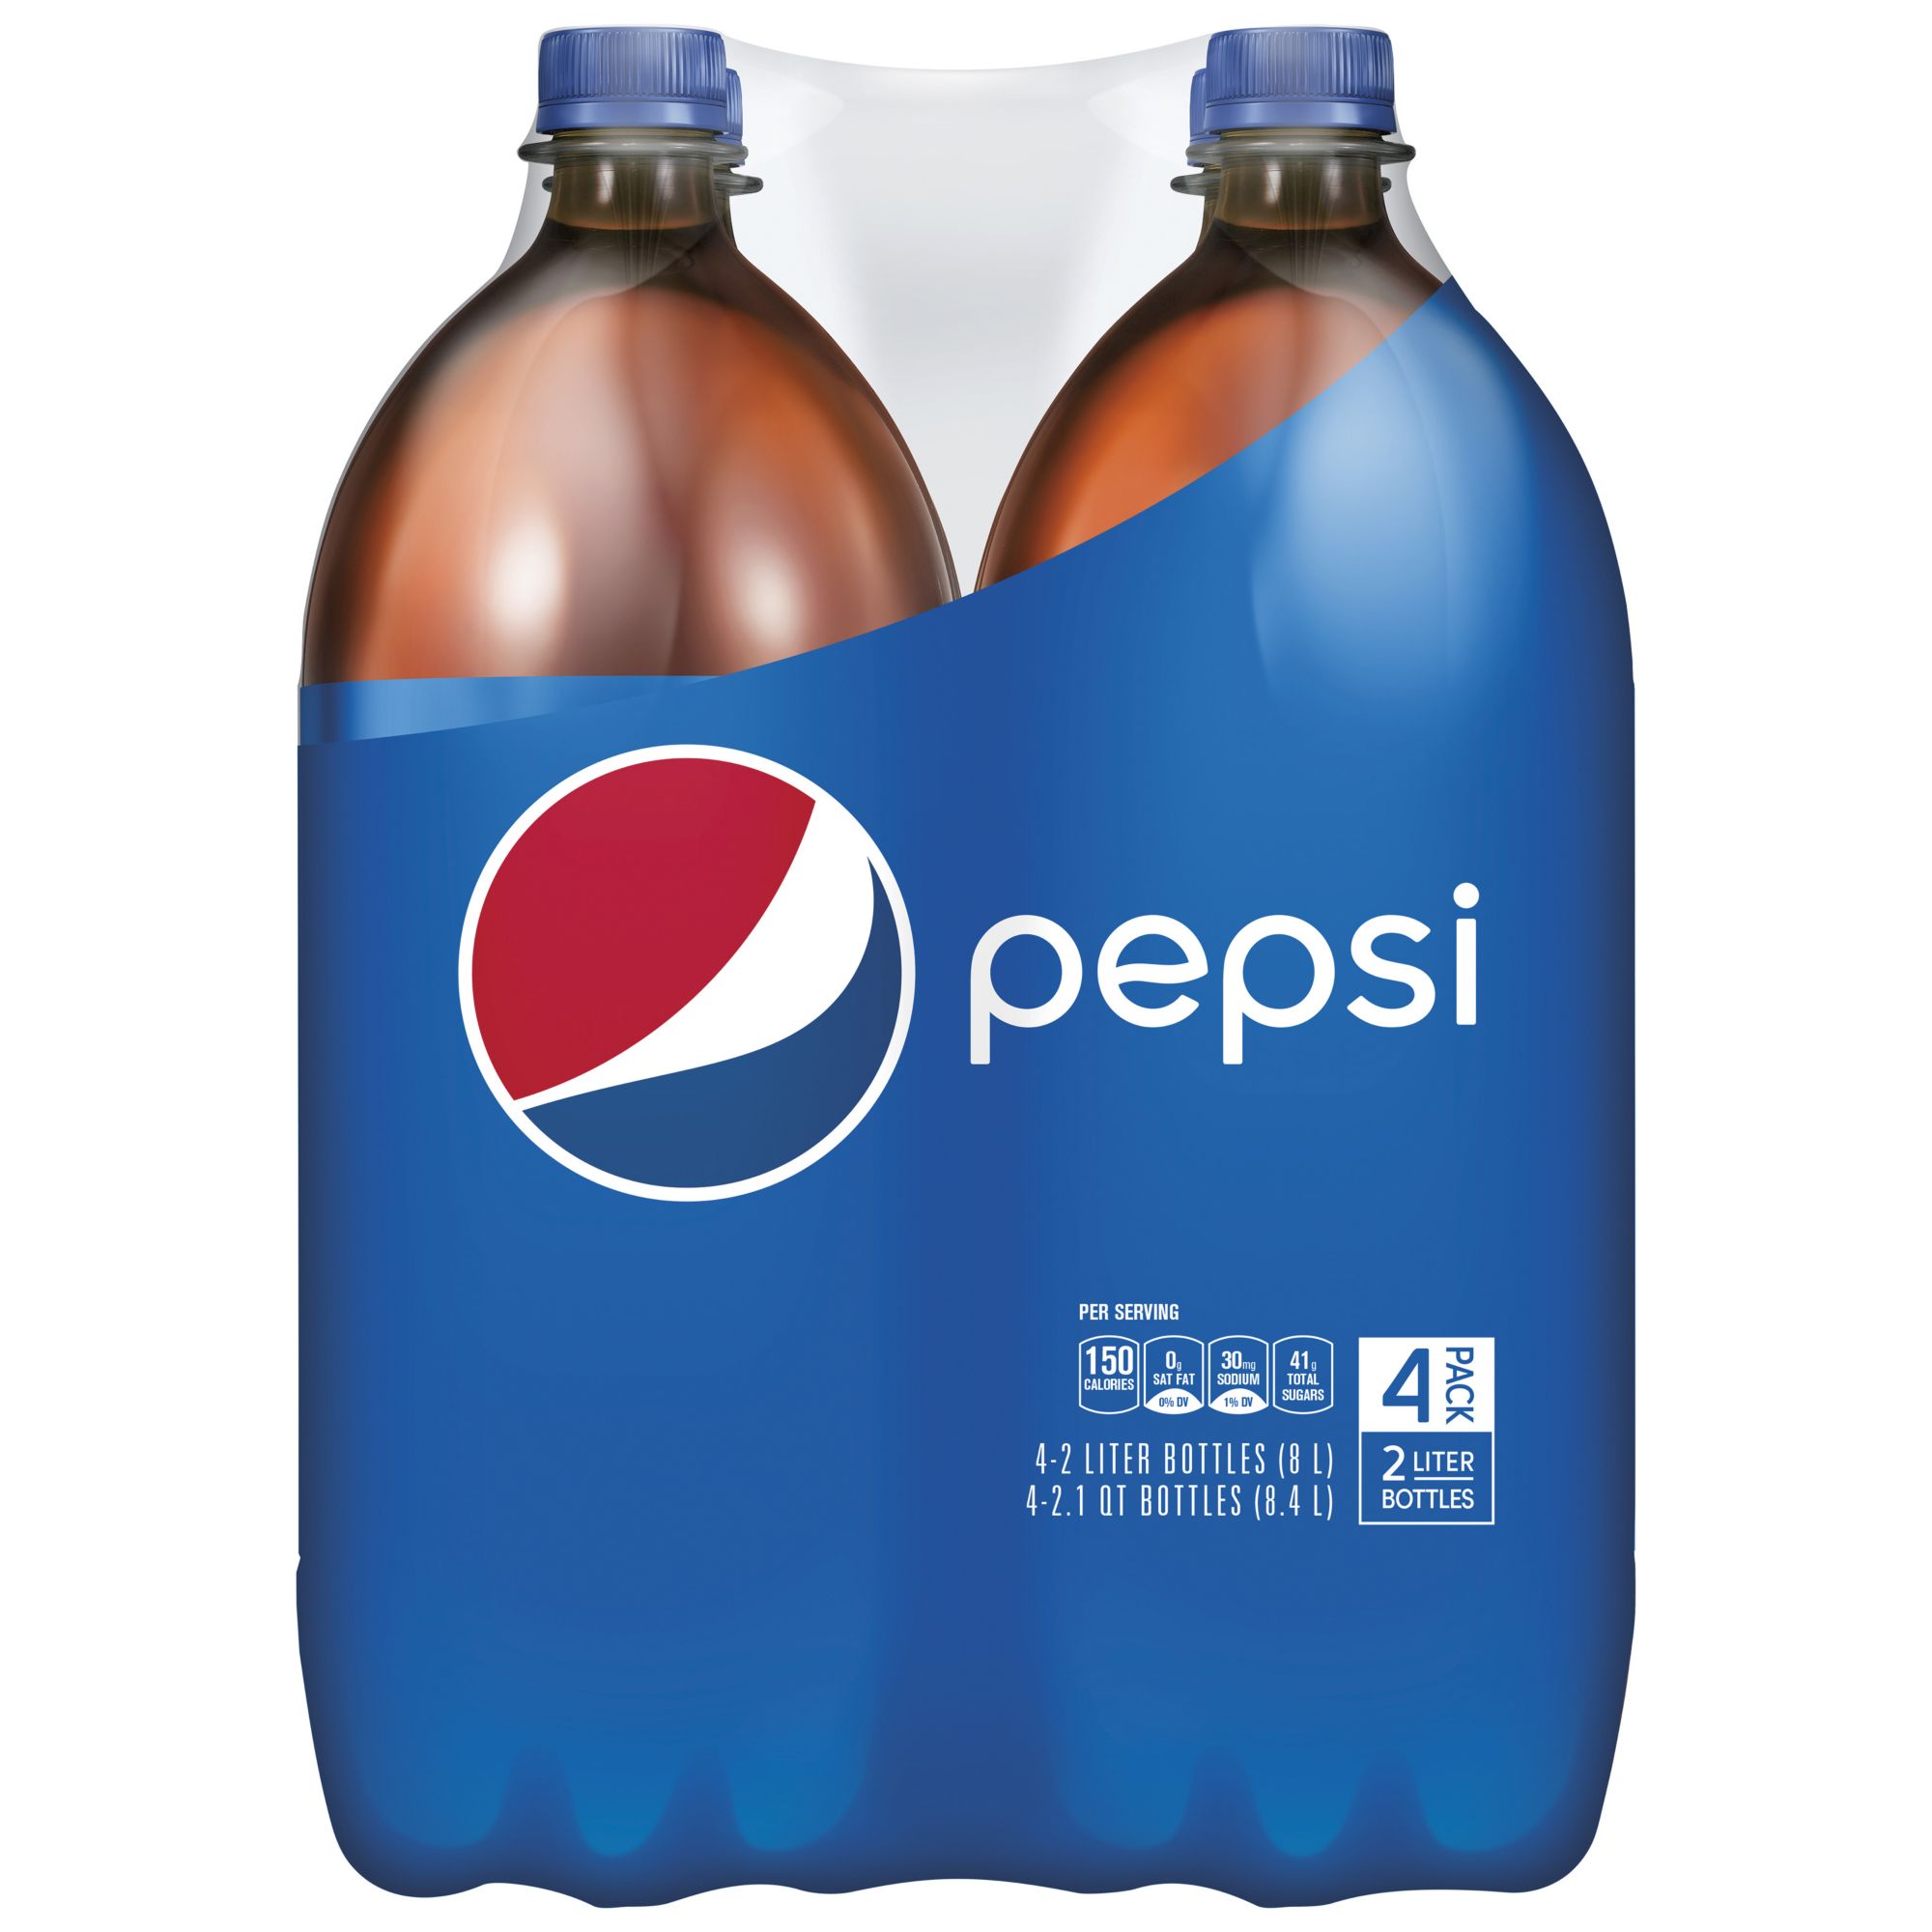 Pepsi Soda, 4 pk./2L bottles